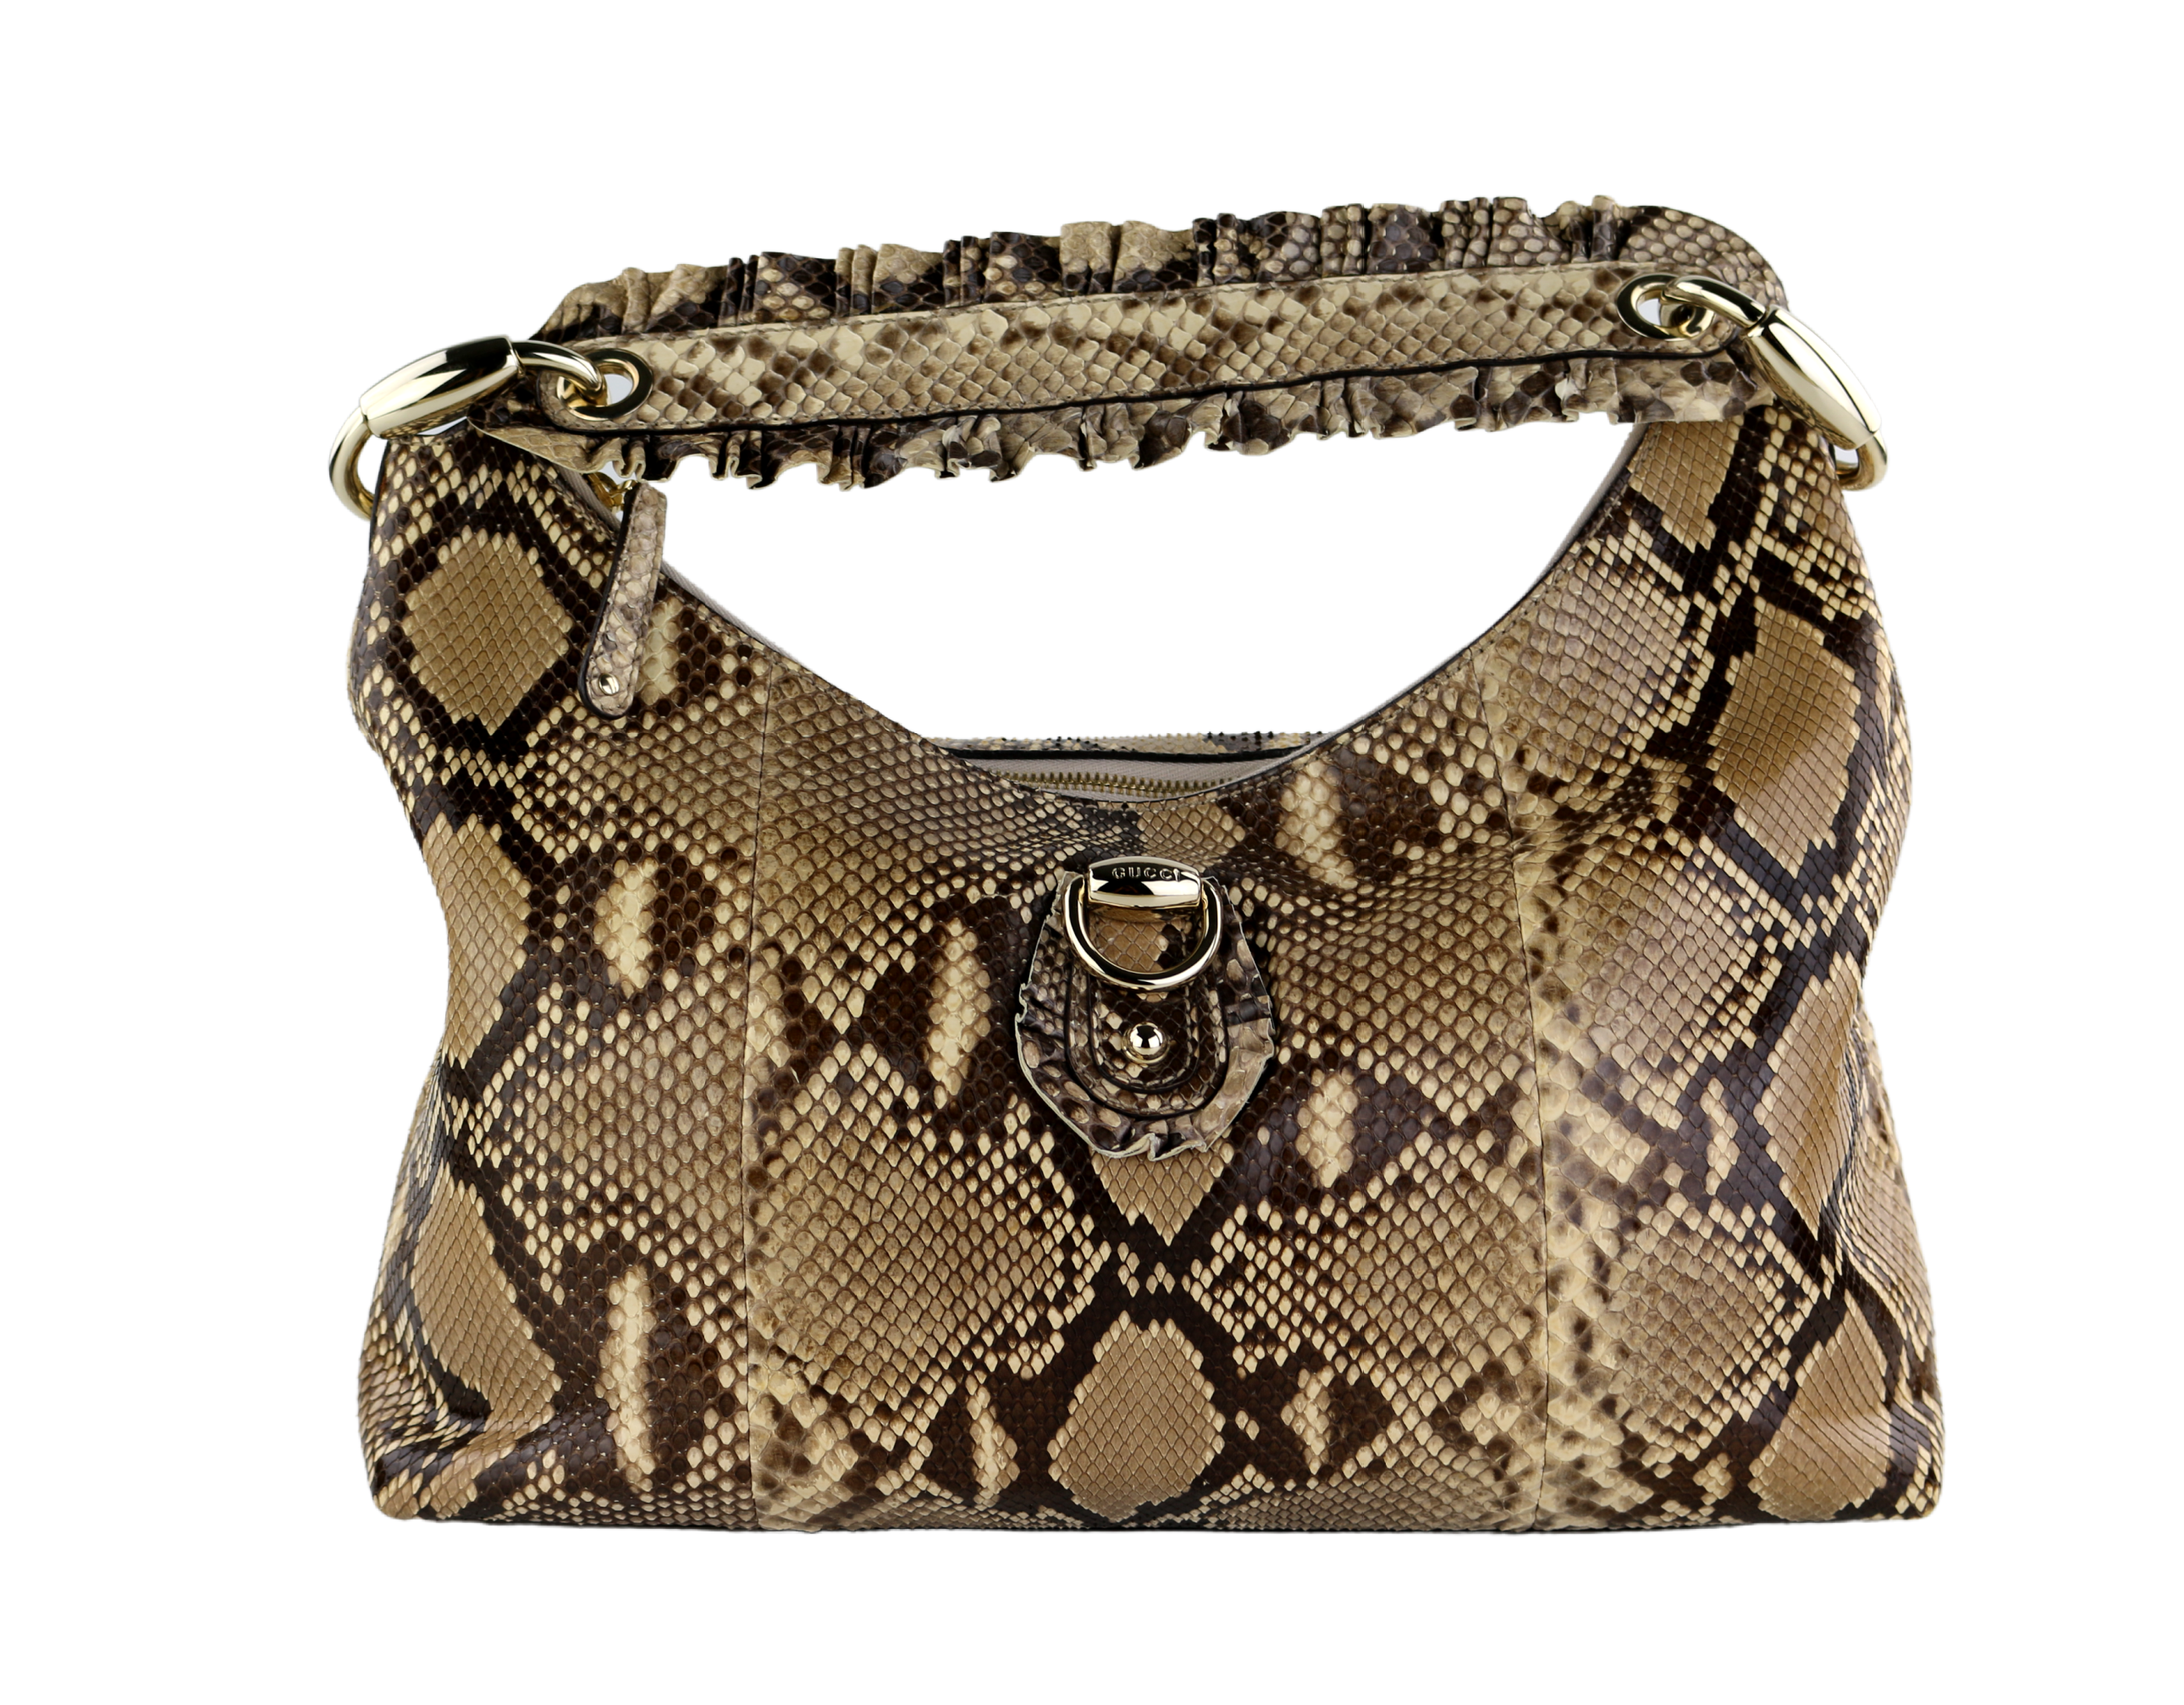 Sold at Auction: Gucci, GUCCI SABRINA NATURAL PYTHON LARGE HOBO BAG